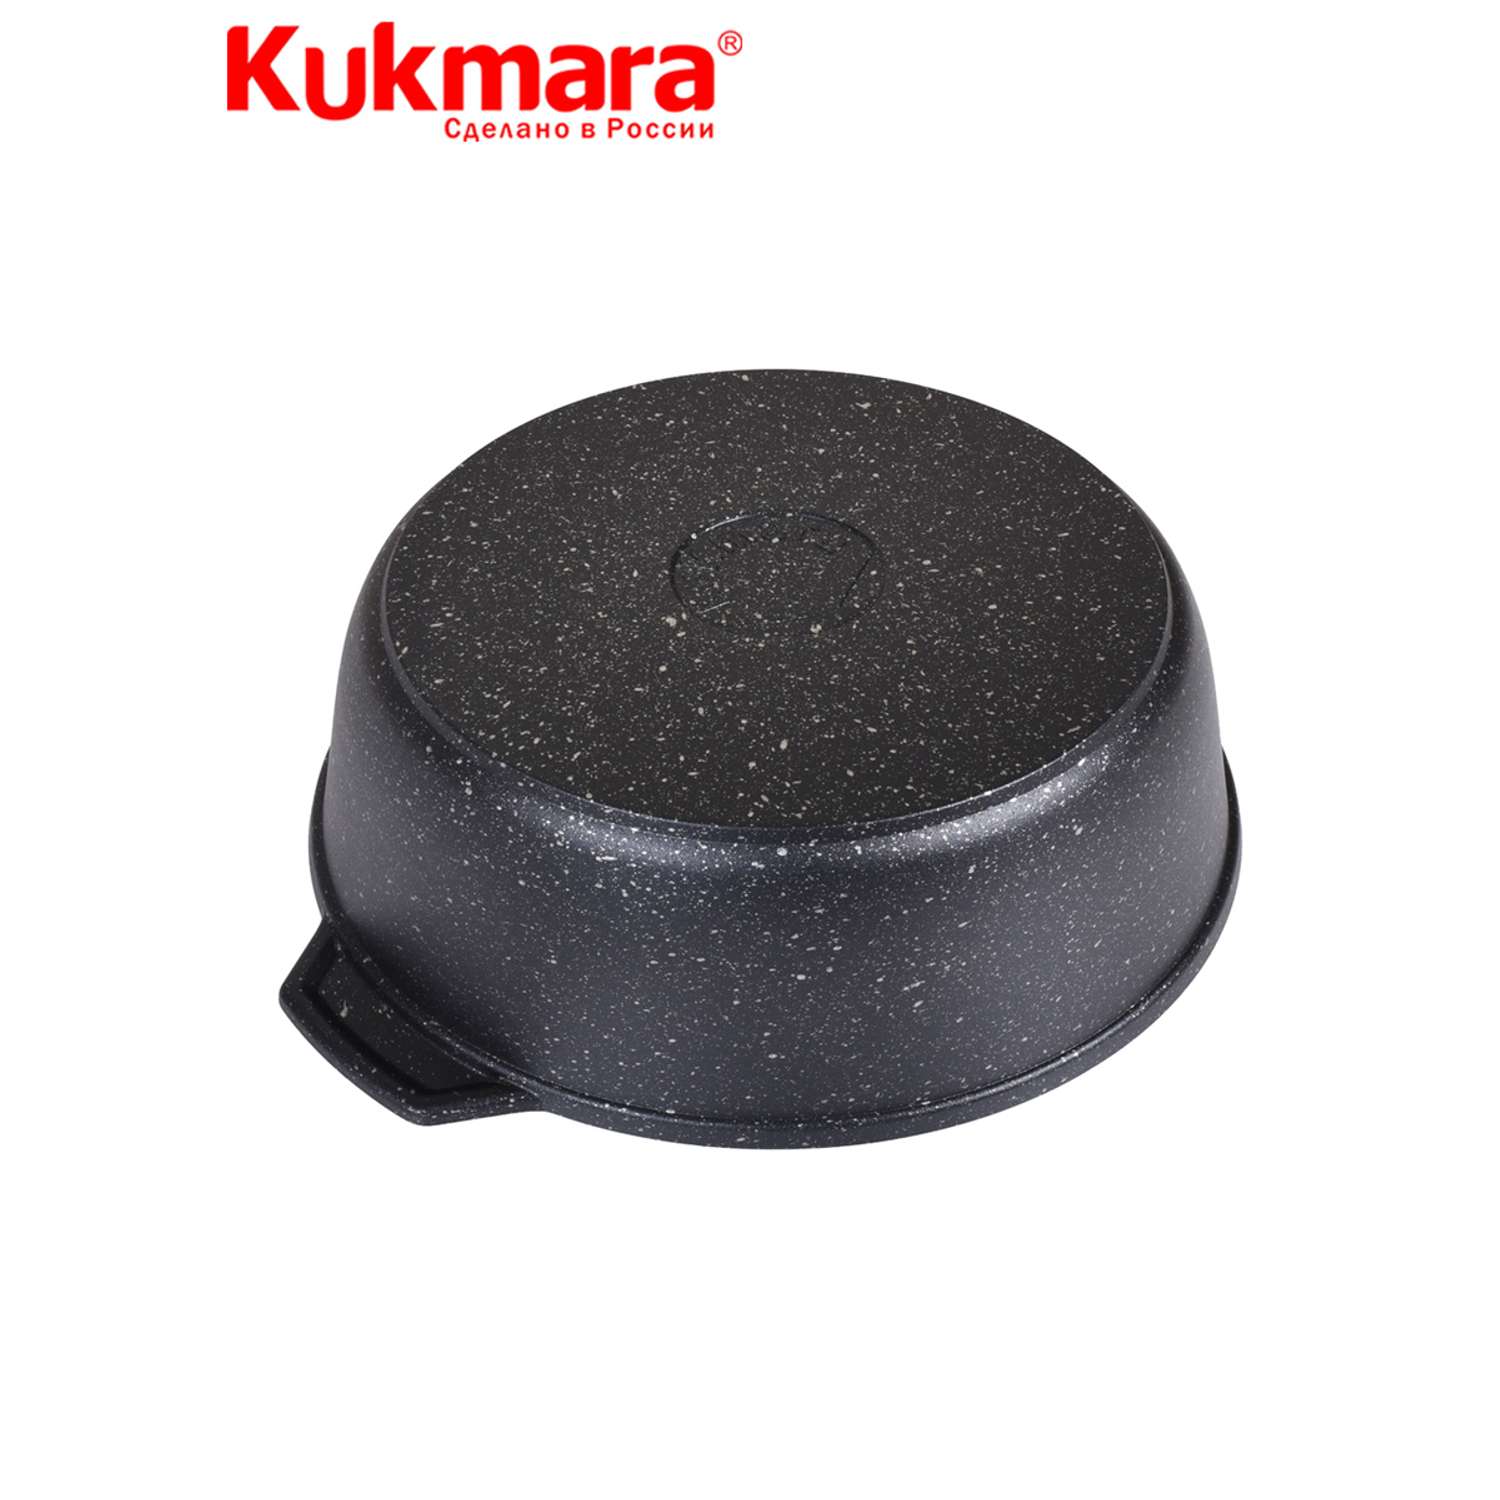 Кастрюля Kukmara жаровня антипригарное покрытие литая 4.0л стеклянная крышка Темный мрамор жмт42а - фото 6